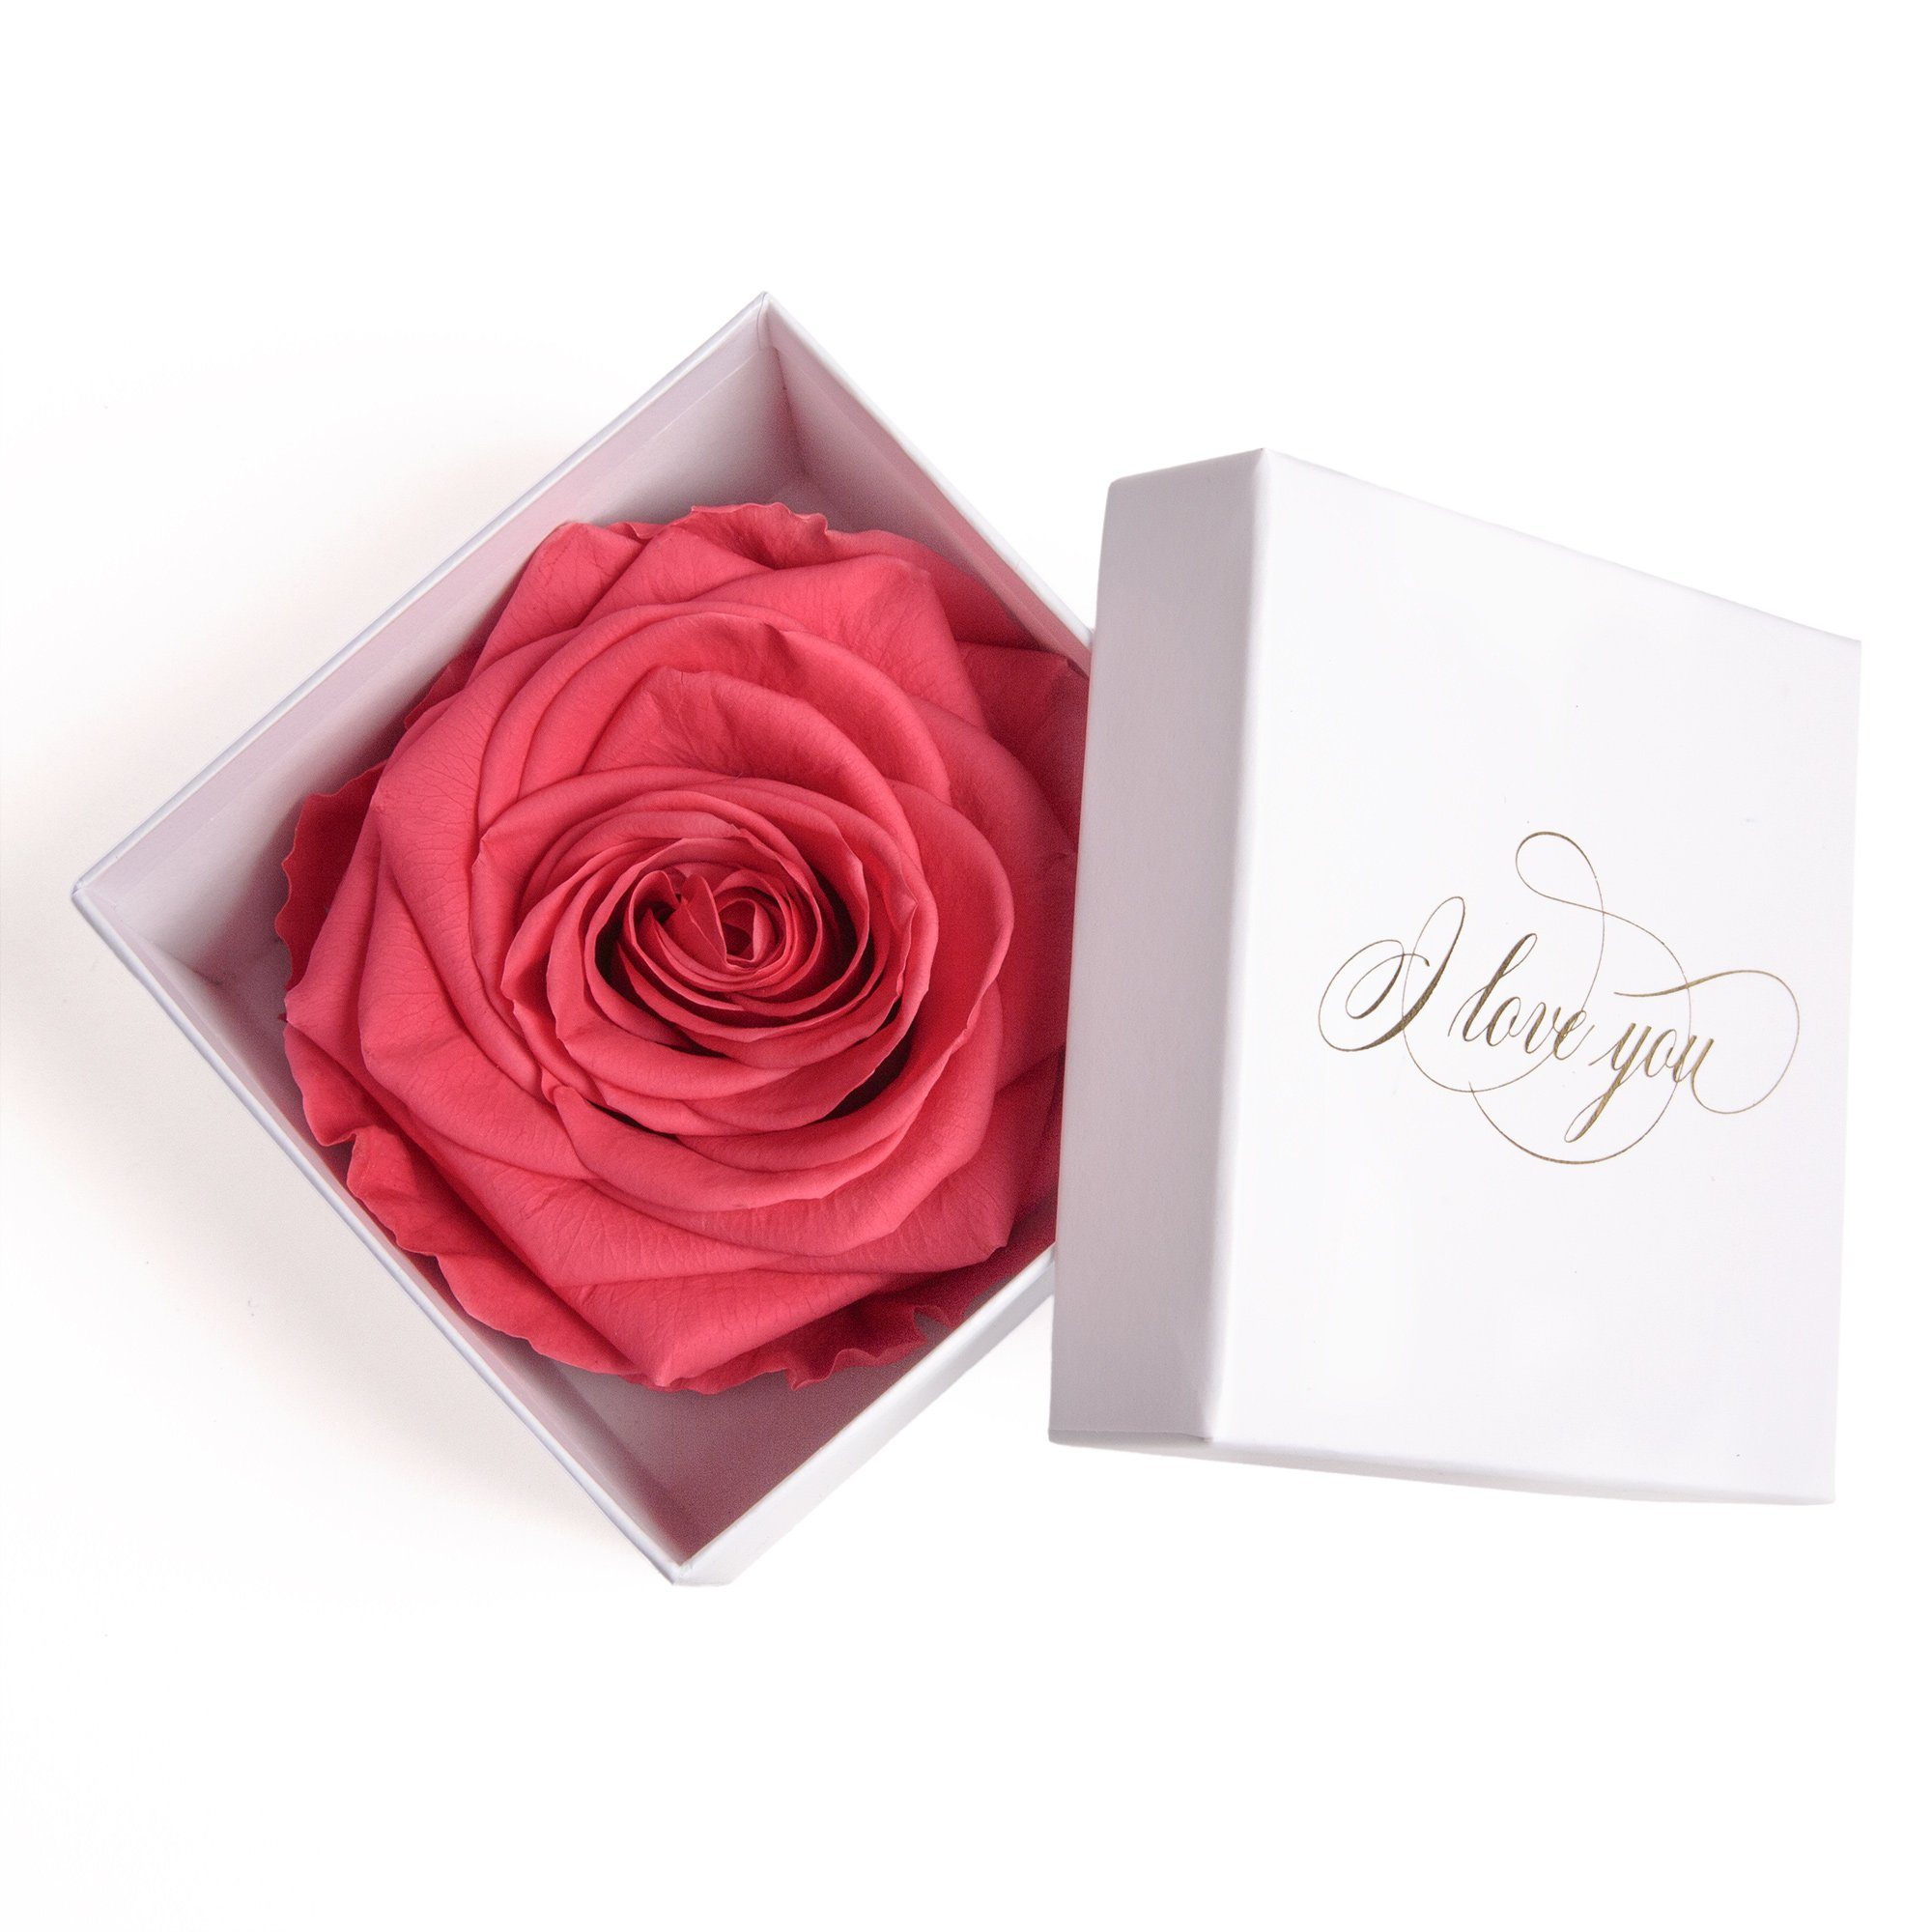 Kunstblume Infinity Rose in Box weiß I LOVE YOU Geschenk Frauen Liebesbeweis Valentinstag Rose, ROSEMARIE SCHULZ Heidelberg, Höhe 6 cm, Rose haltbar bis zu 3 Jahre pink